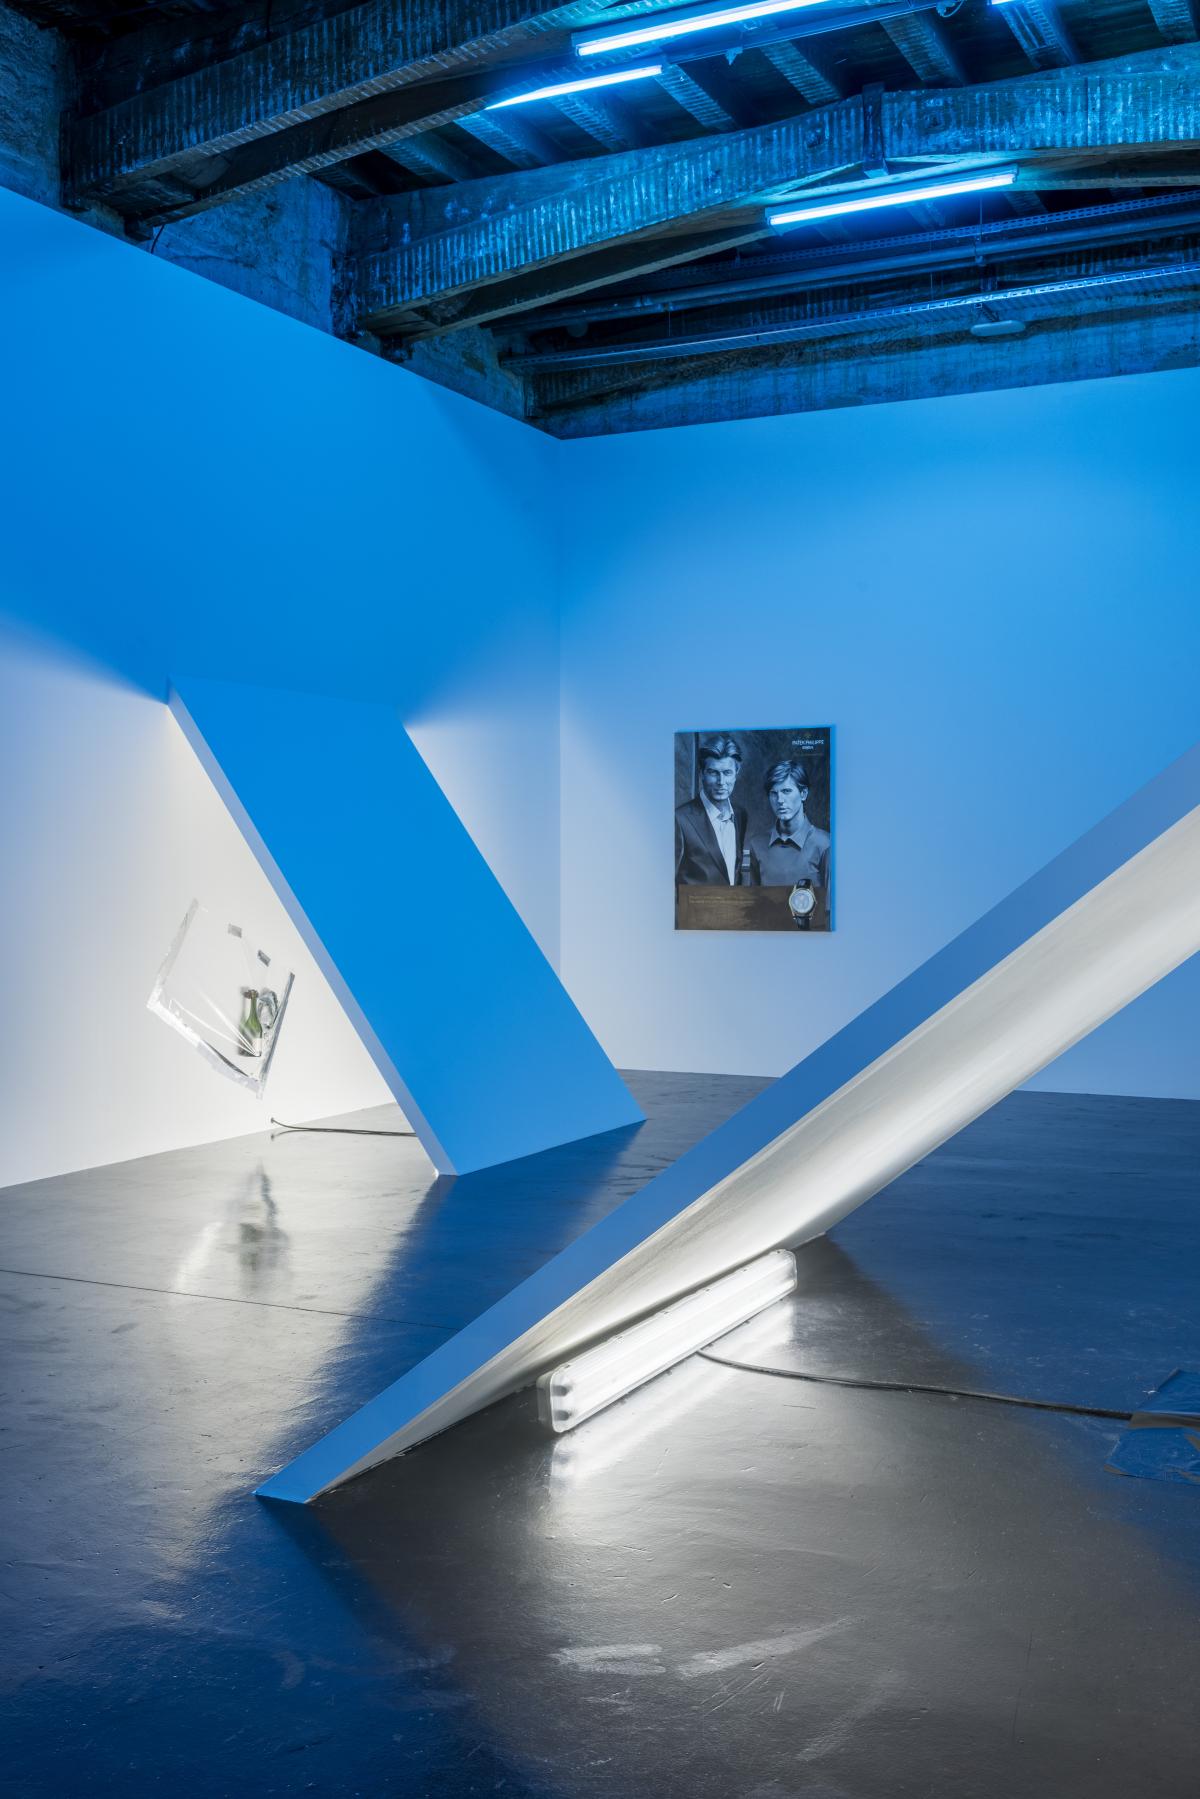 La salle de l’exposition est baignée dans une lumière qui teinte l’espace en bleu. Des extensions des murs font obstacle, empêchant ainsi une circulation libre dans l'espace. Sous ces pans de murs obliques, des bandes de tissus et déchets sont recouverts de films plastifiés. On aperçoit une toile au fond de la salle.